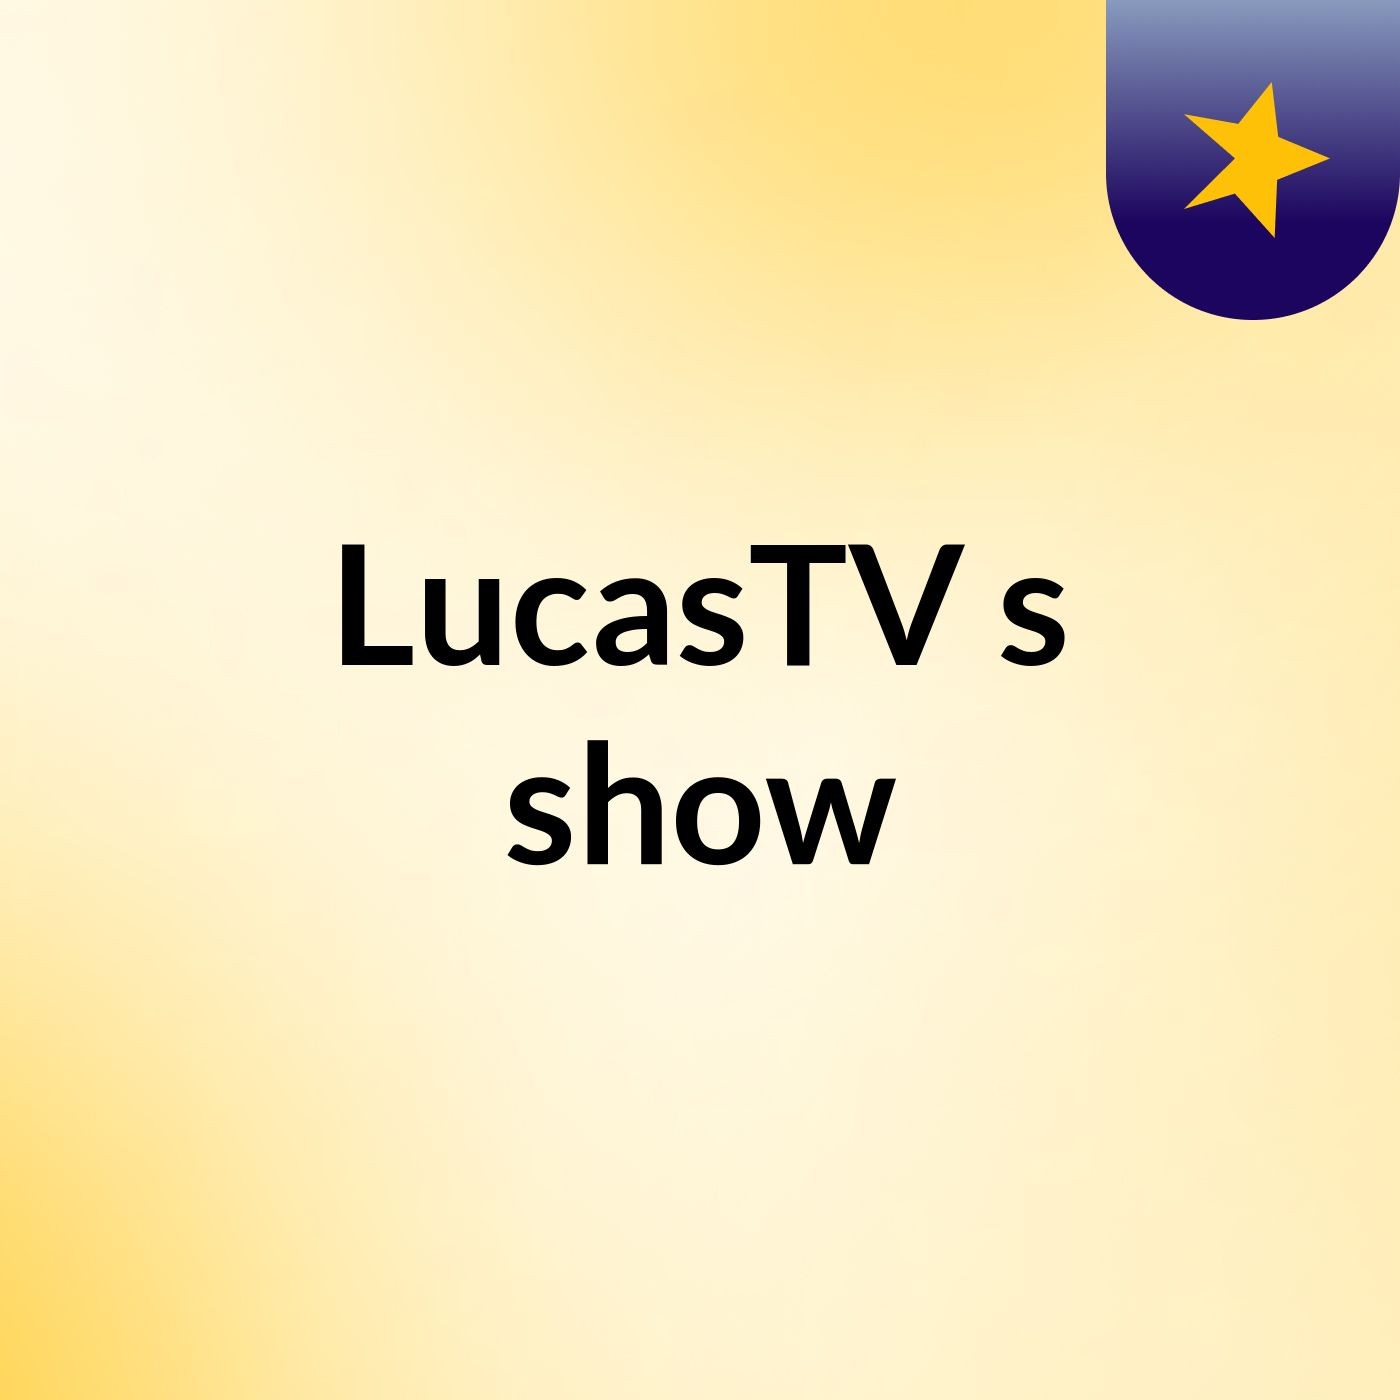 LucasTV's show